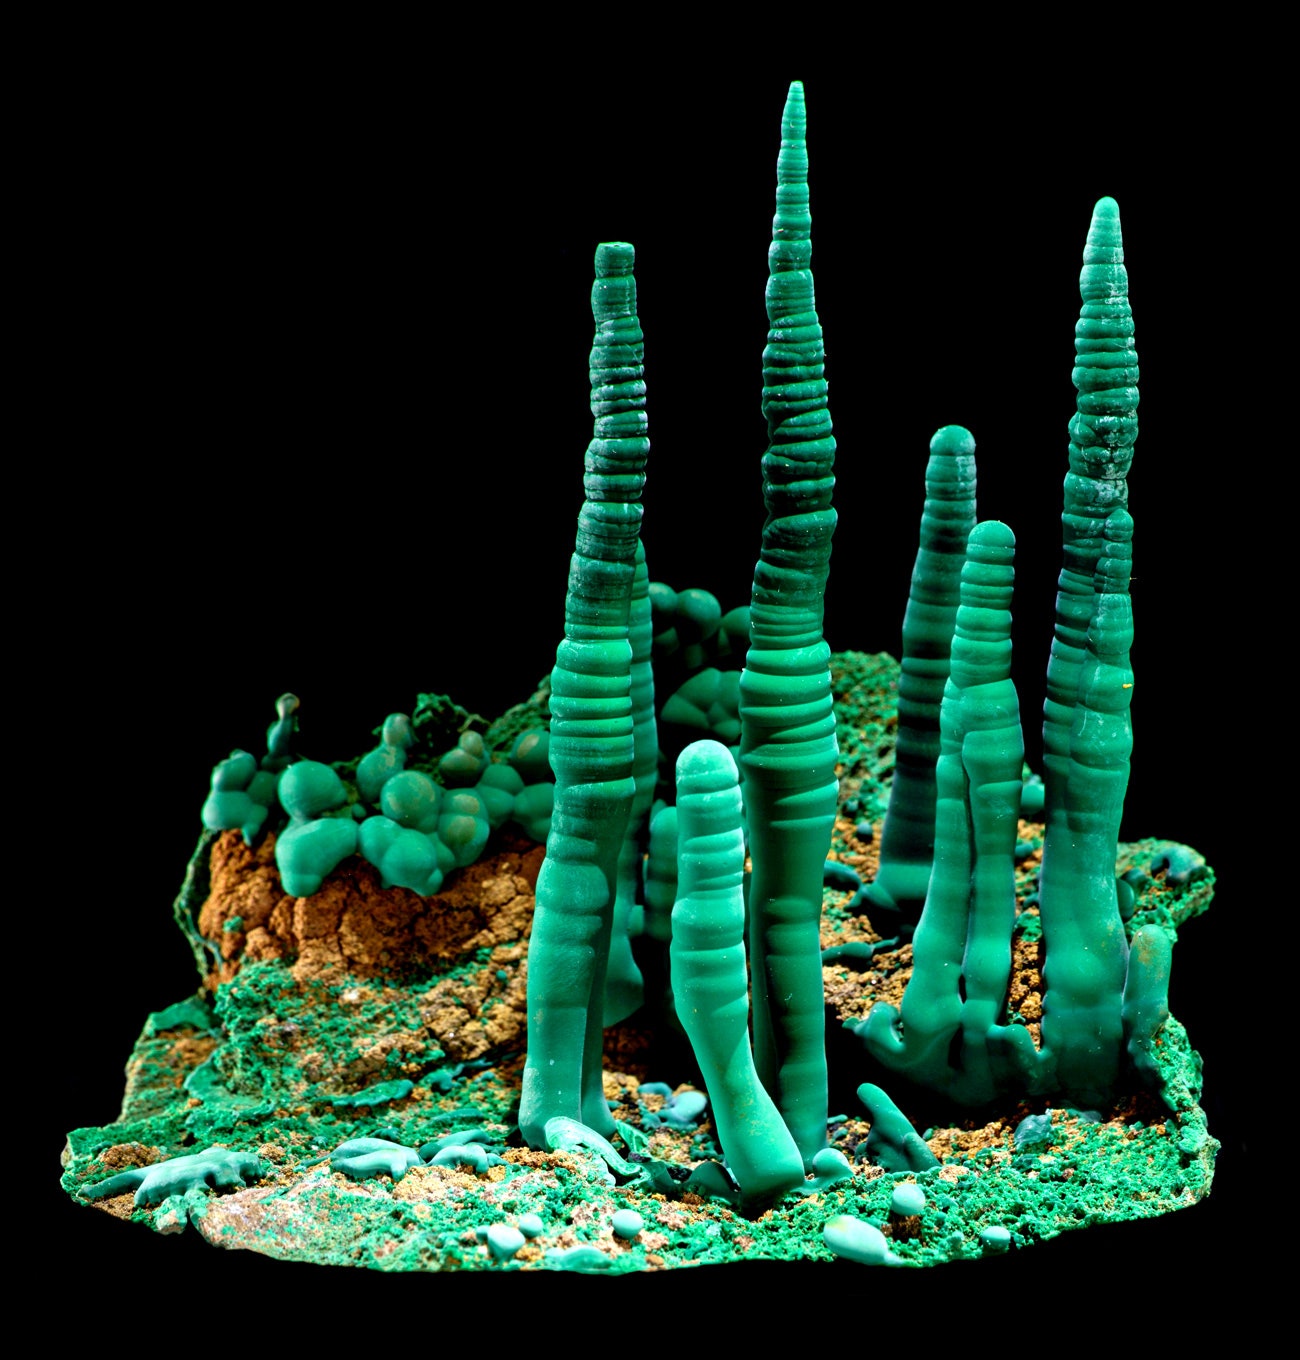 Formaciones de malaquita azul-verde que forman torres altas